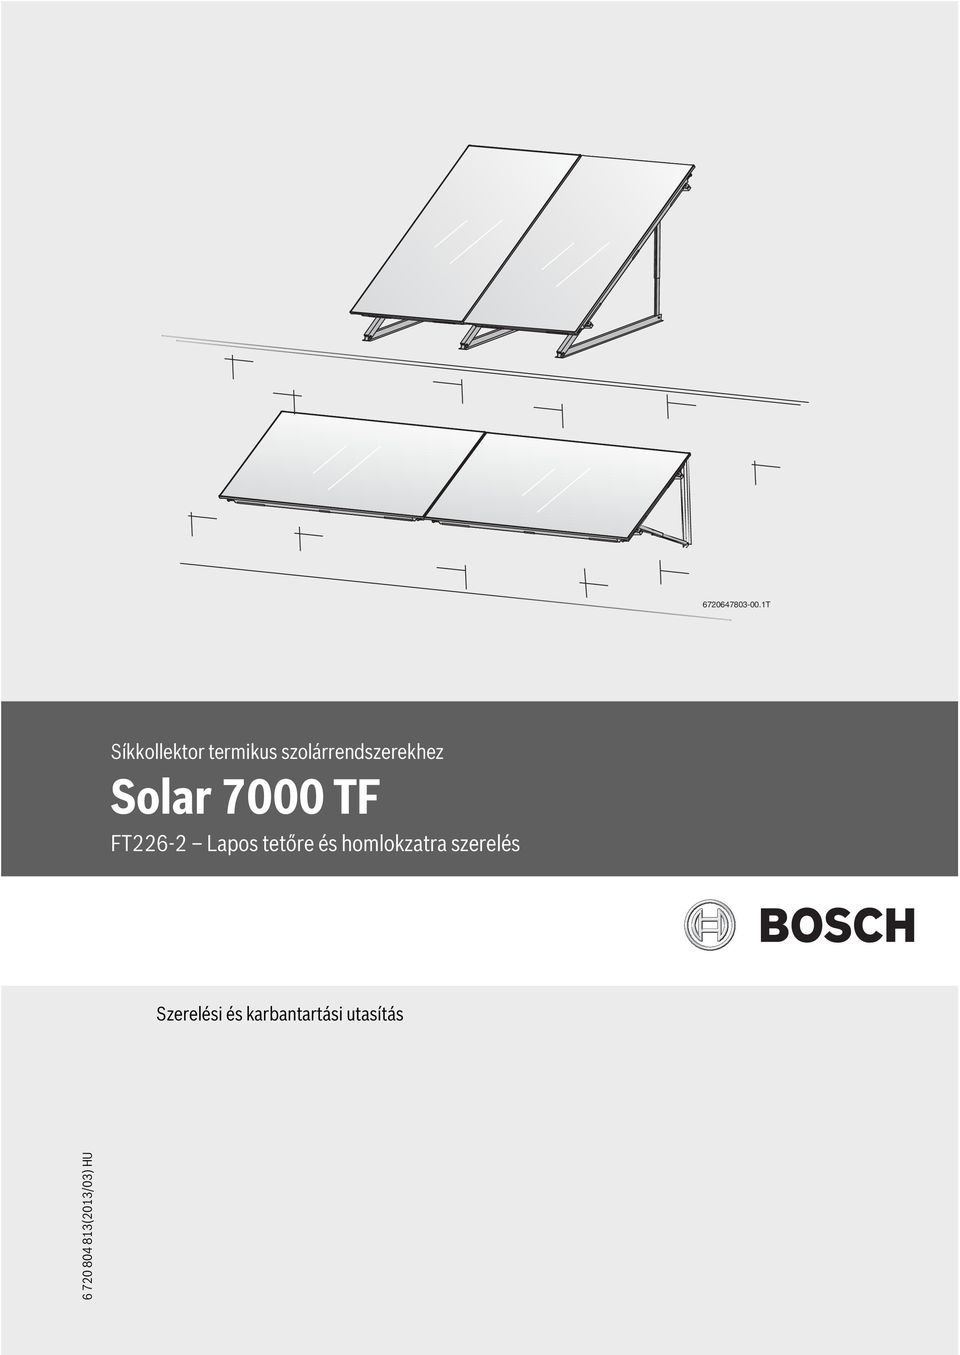 szolárrendszerekhez Solar 7000 TF Lapos